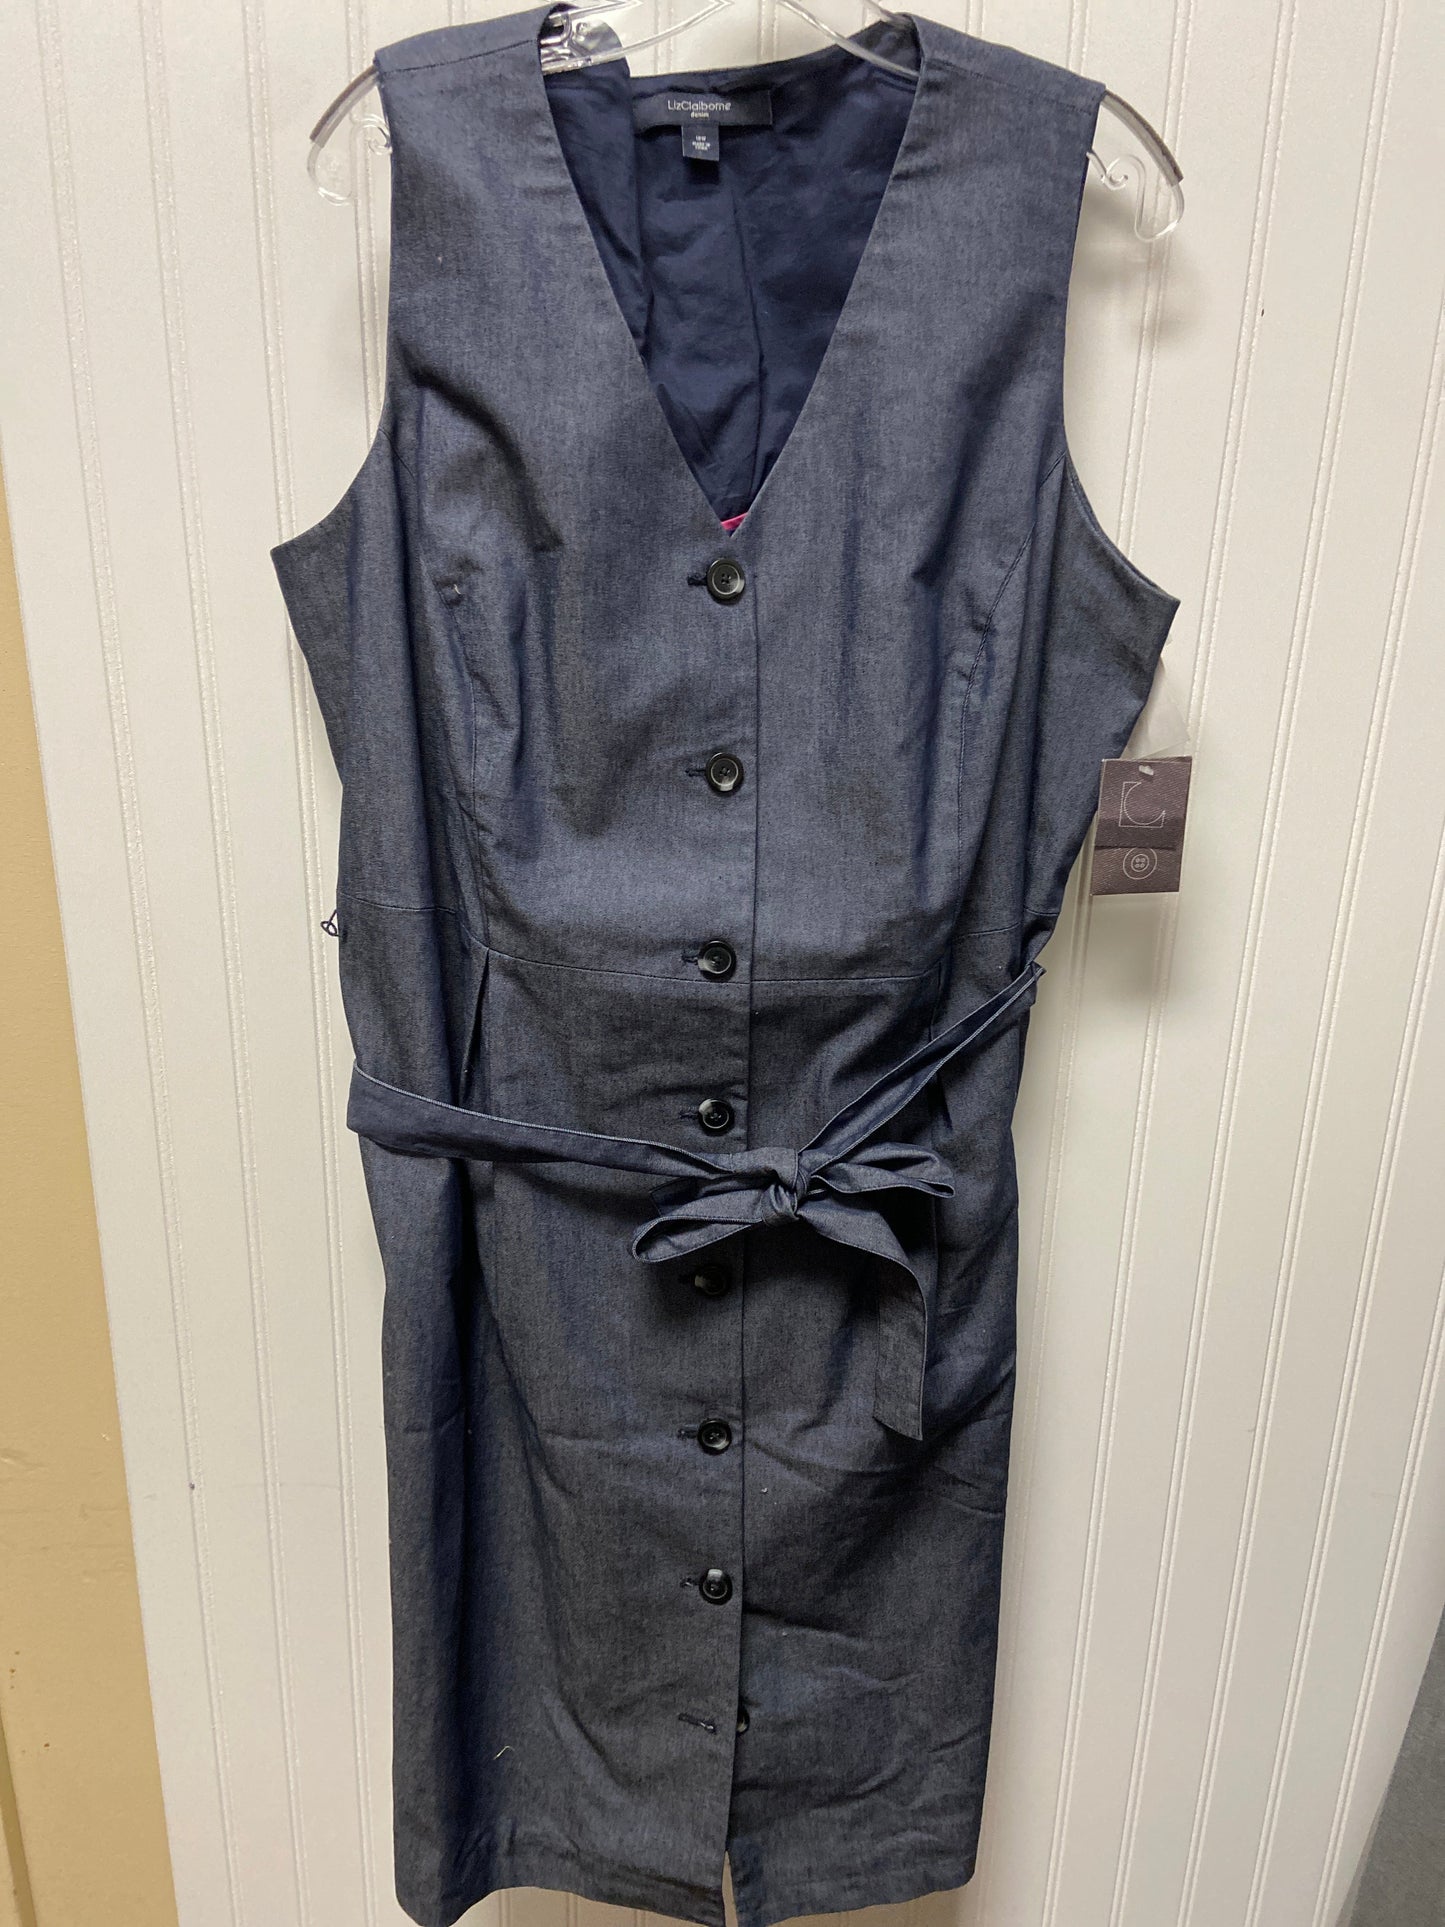 Blue Denim Dress Work Liz Claiborne, Size 1x